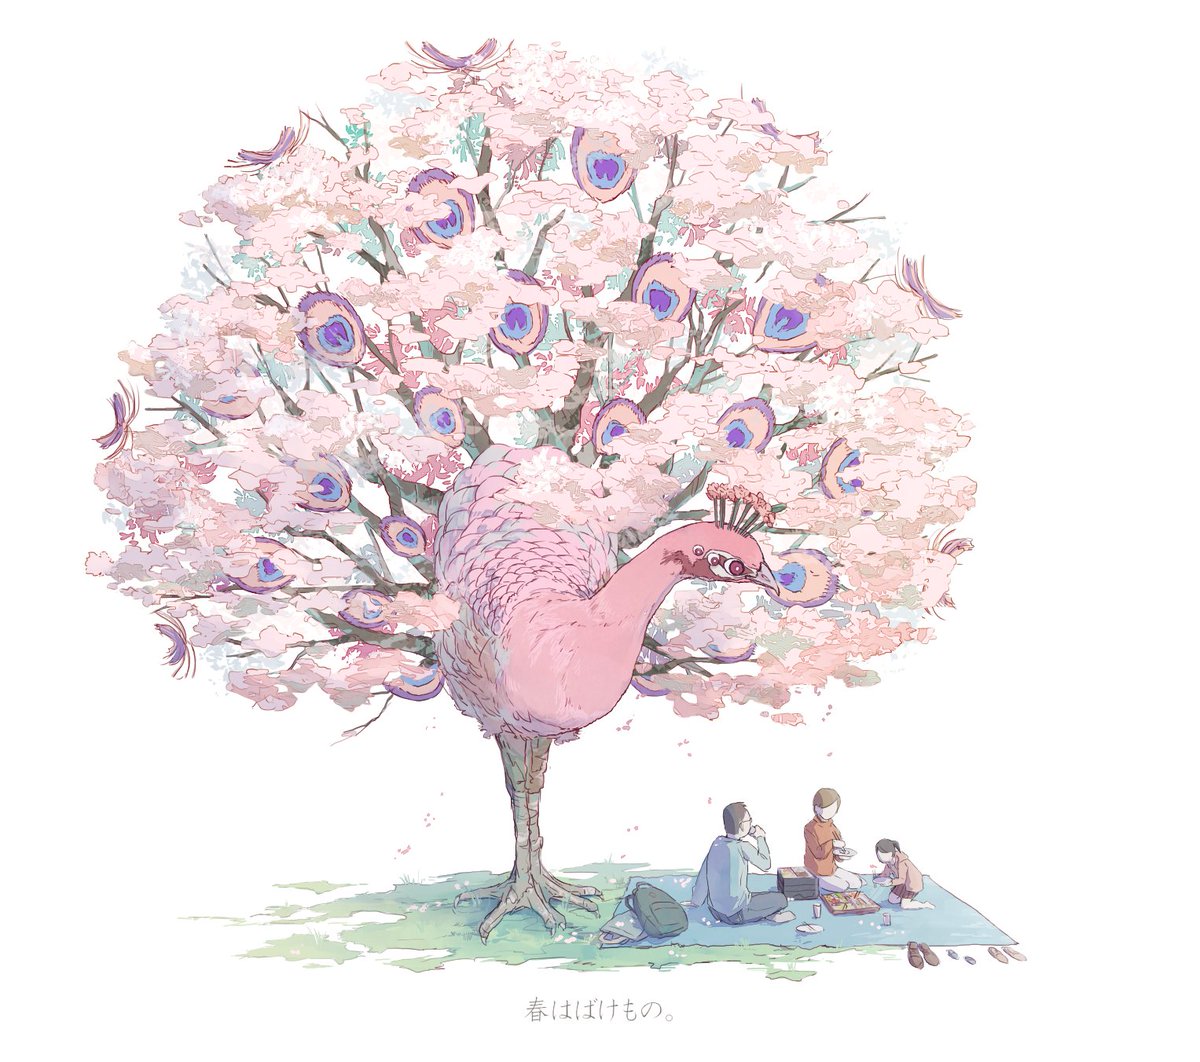 「春はばけもの。 」|嘉村ギミのイラスト